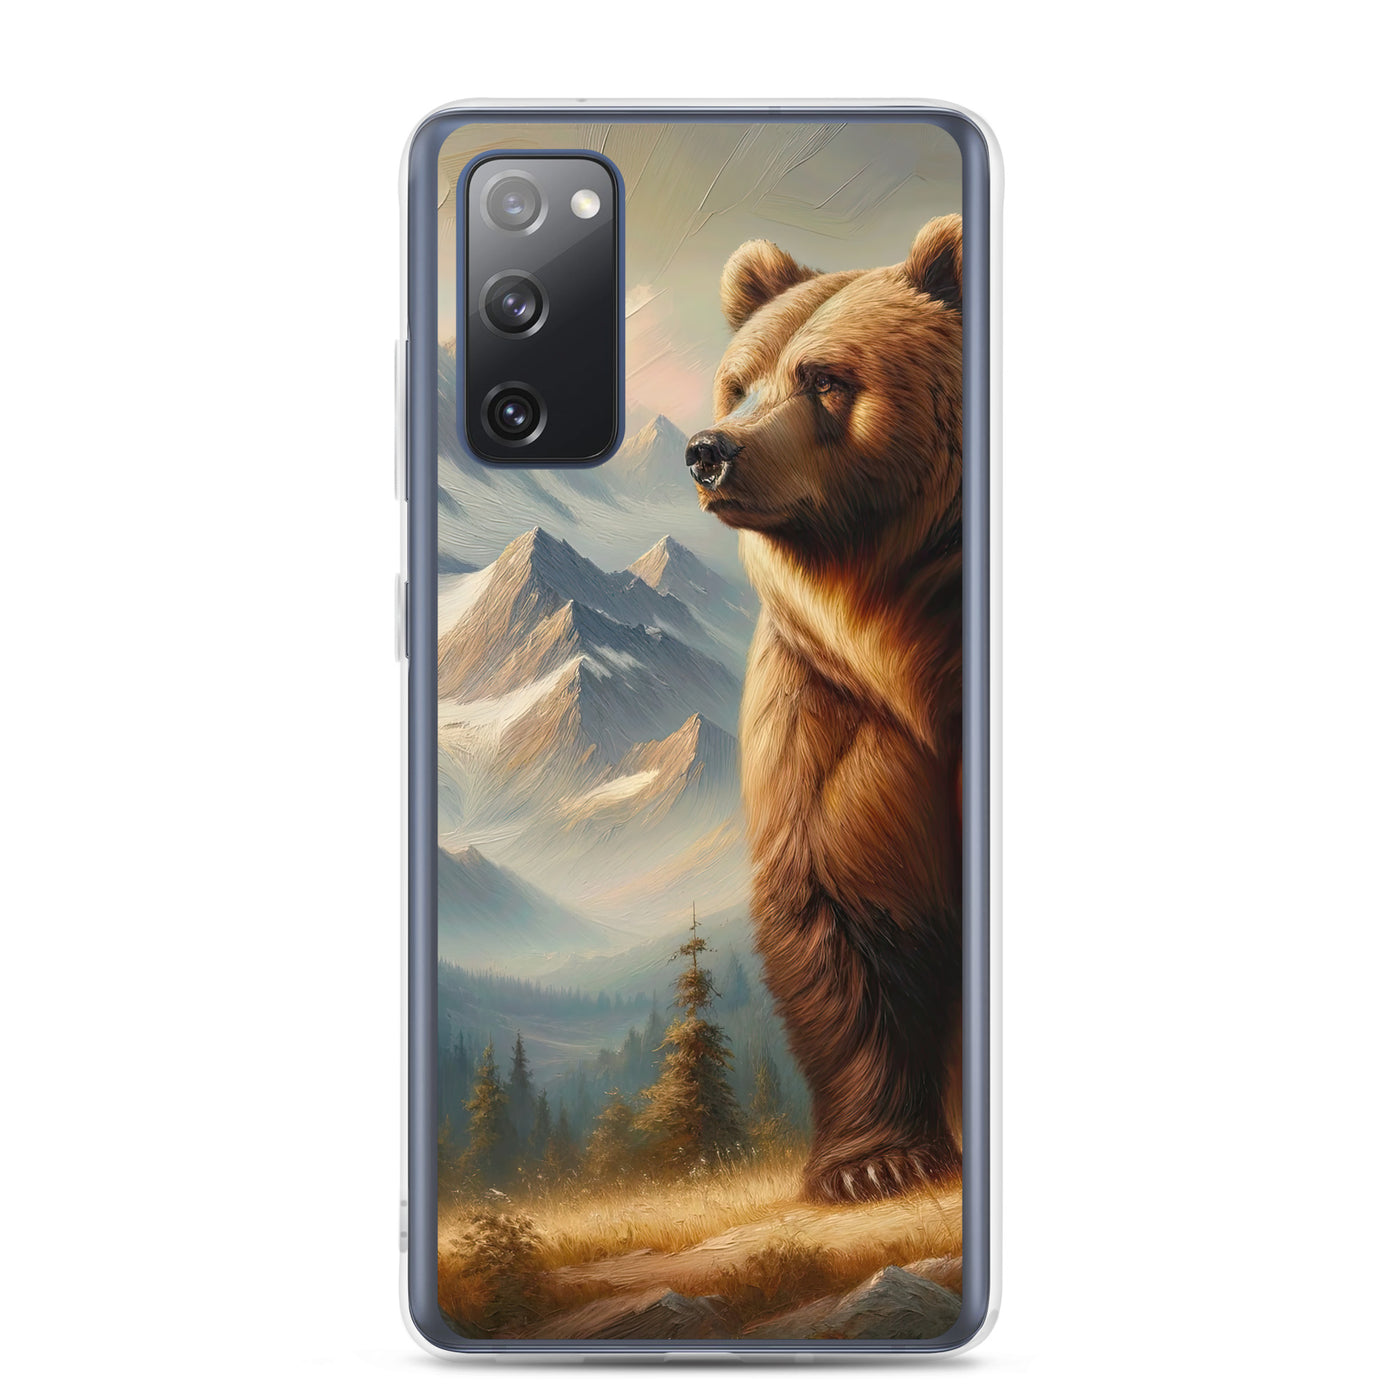 Ölgemälde eines königlichen Bären vor der majestätischen Alpenkulisse - Samsung Schutzhülle (durchsichtig) camping xxx yyy zzz Samsung Galaxy S20 FE